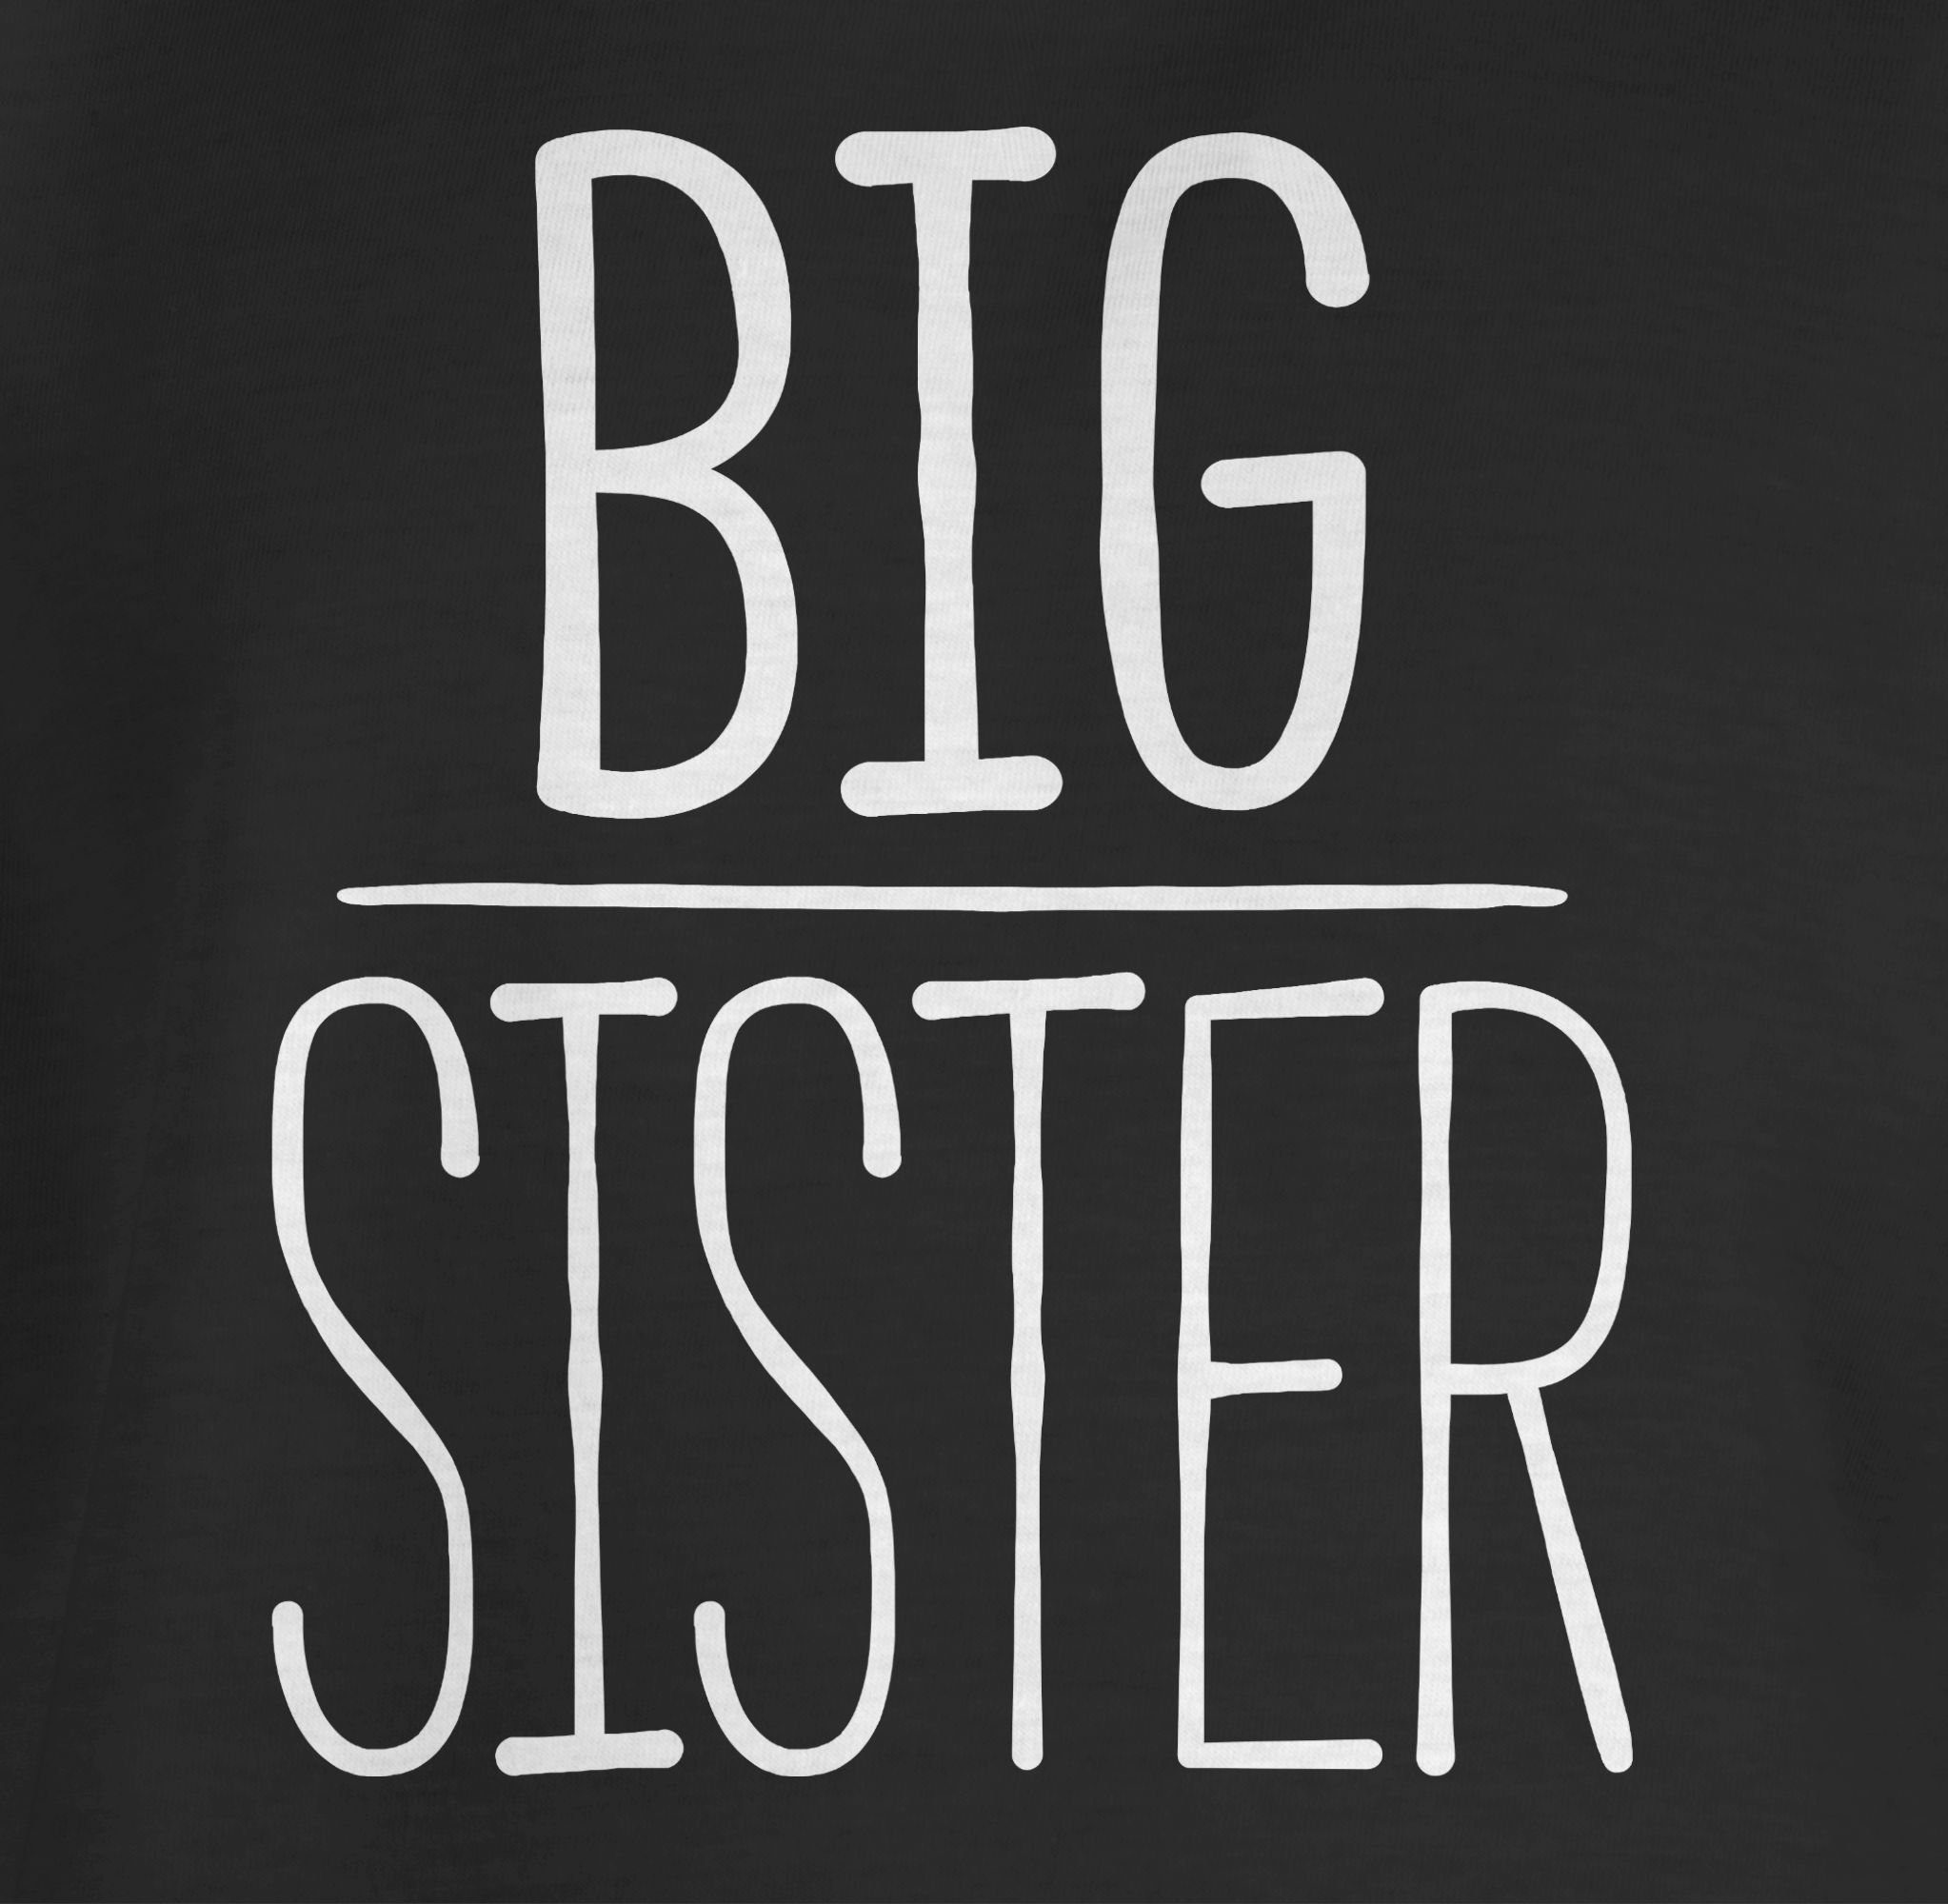 Shirtracer T-Shirt Big Schwarz Schwester 2 und Bruder Geschwister Sister